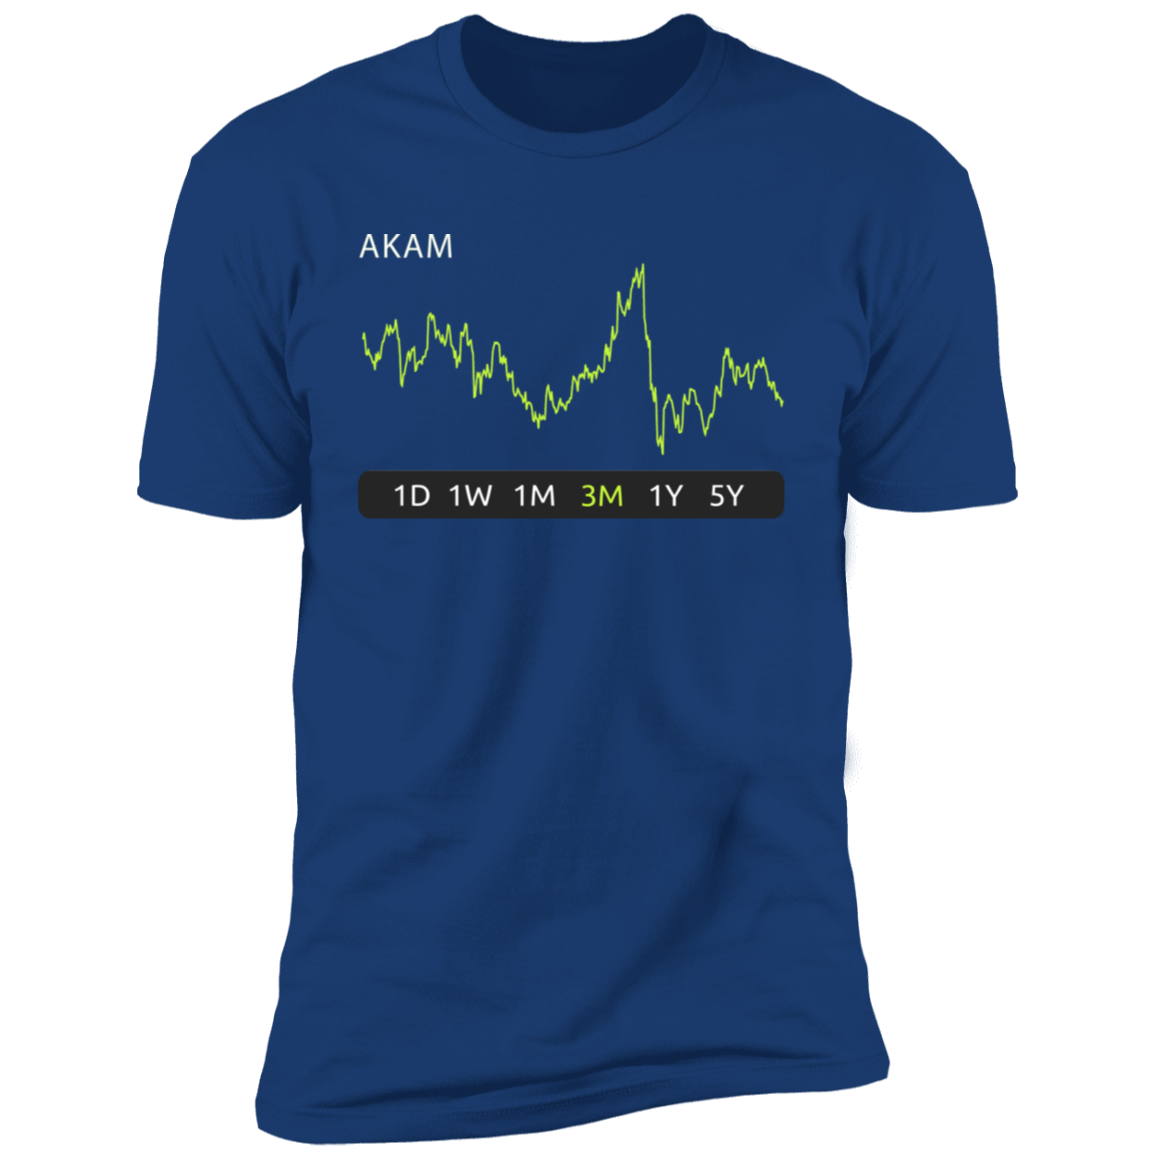 AKAM Stock 3m Premium T-Shirt